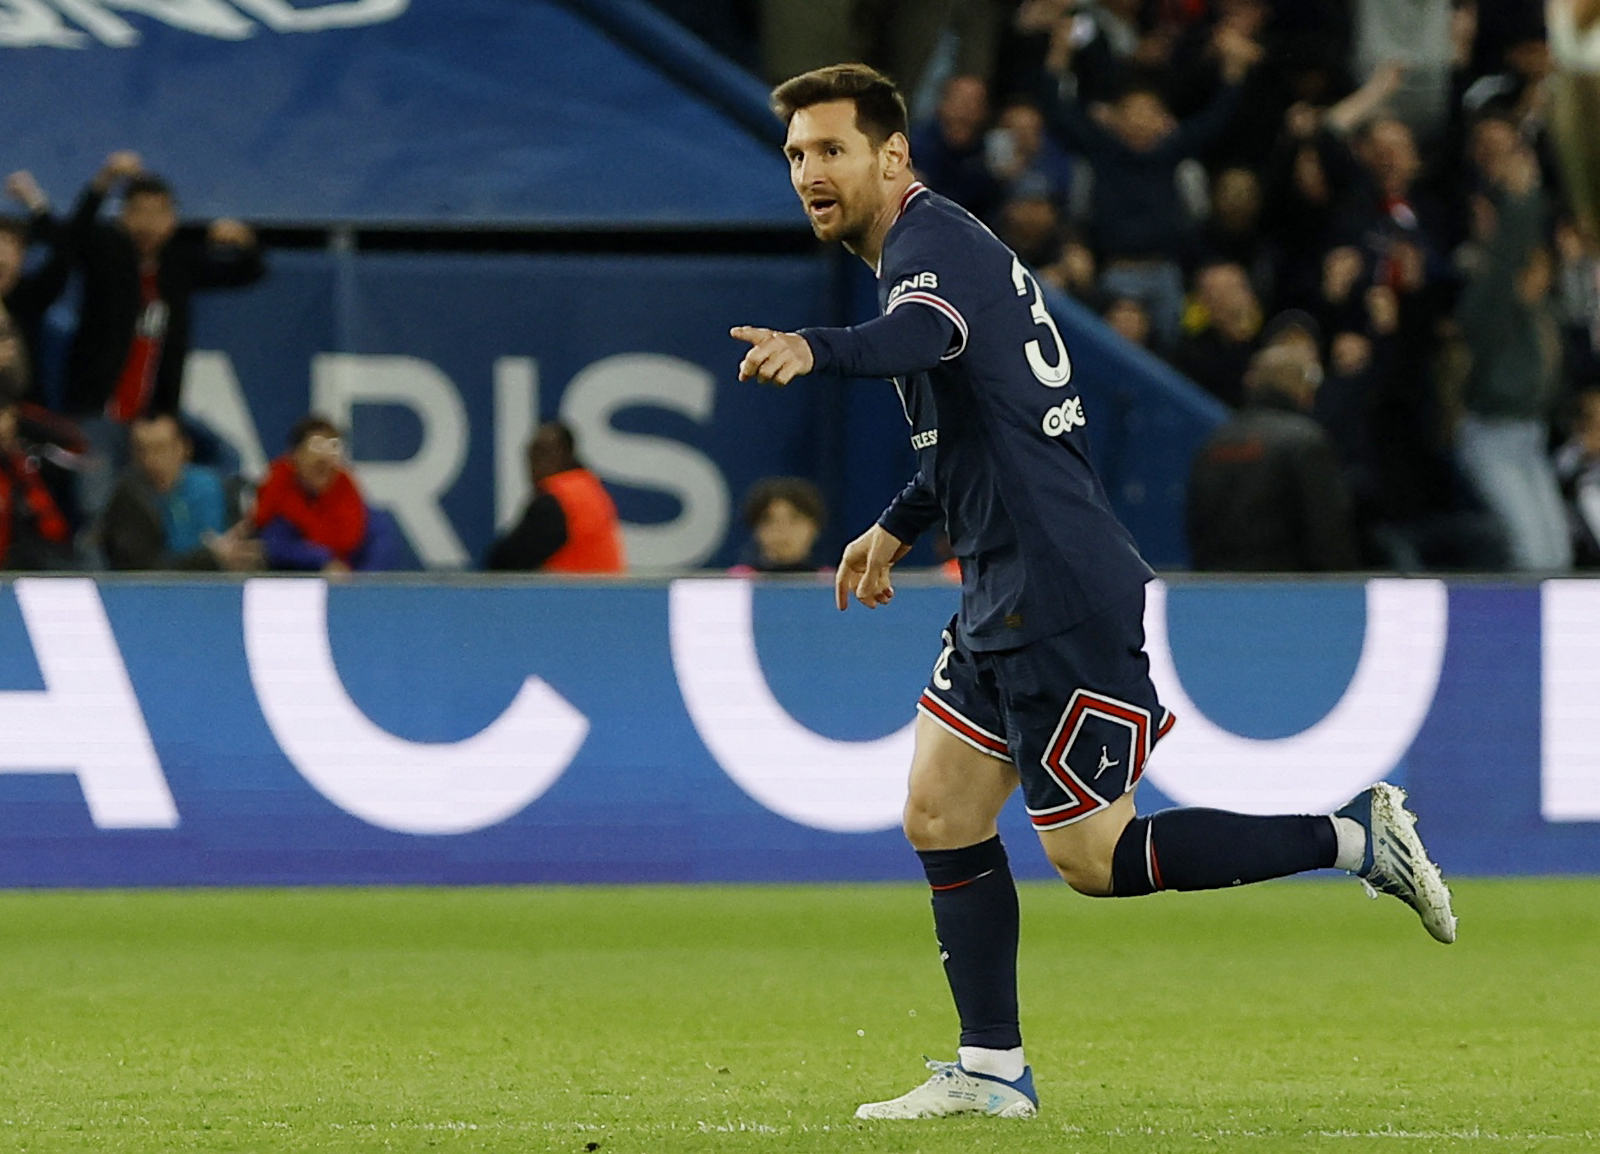 El festejo de Messi despus de su gran conquista (REUTERS/Christian Hartmann)